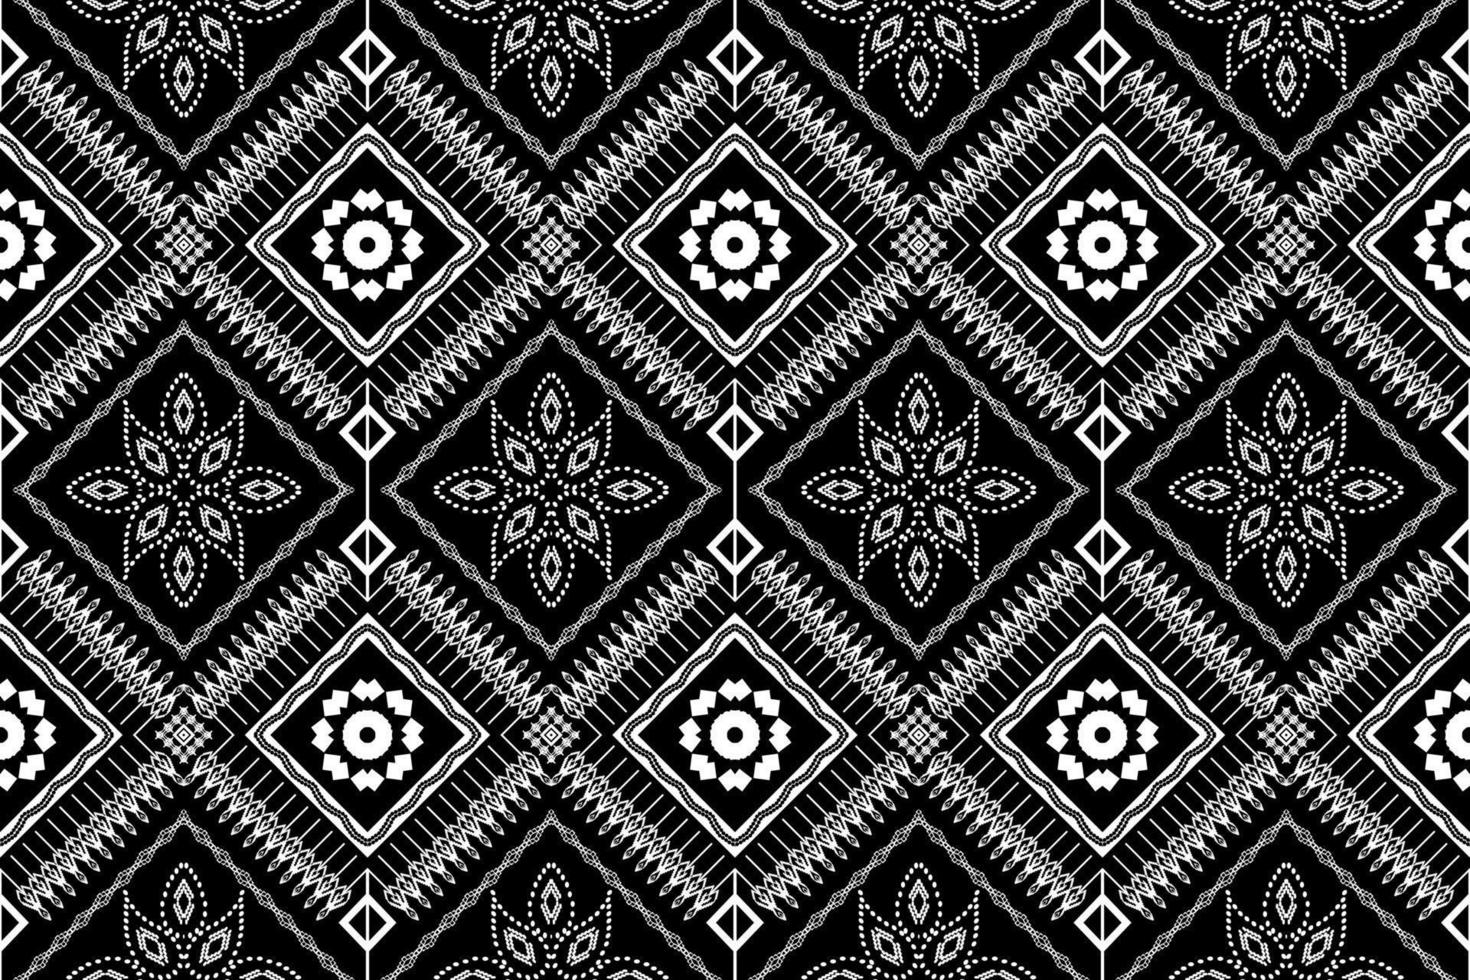 padrão tradicional oriental étnico geométrico figura estilo de bordado tribal design para plano de fundo, papel de parede, roupas, envolvimento, tecido, ilustração vetorial vetor